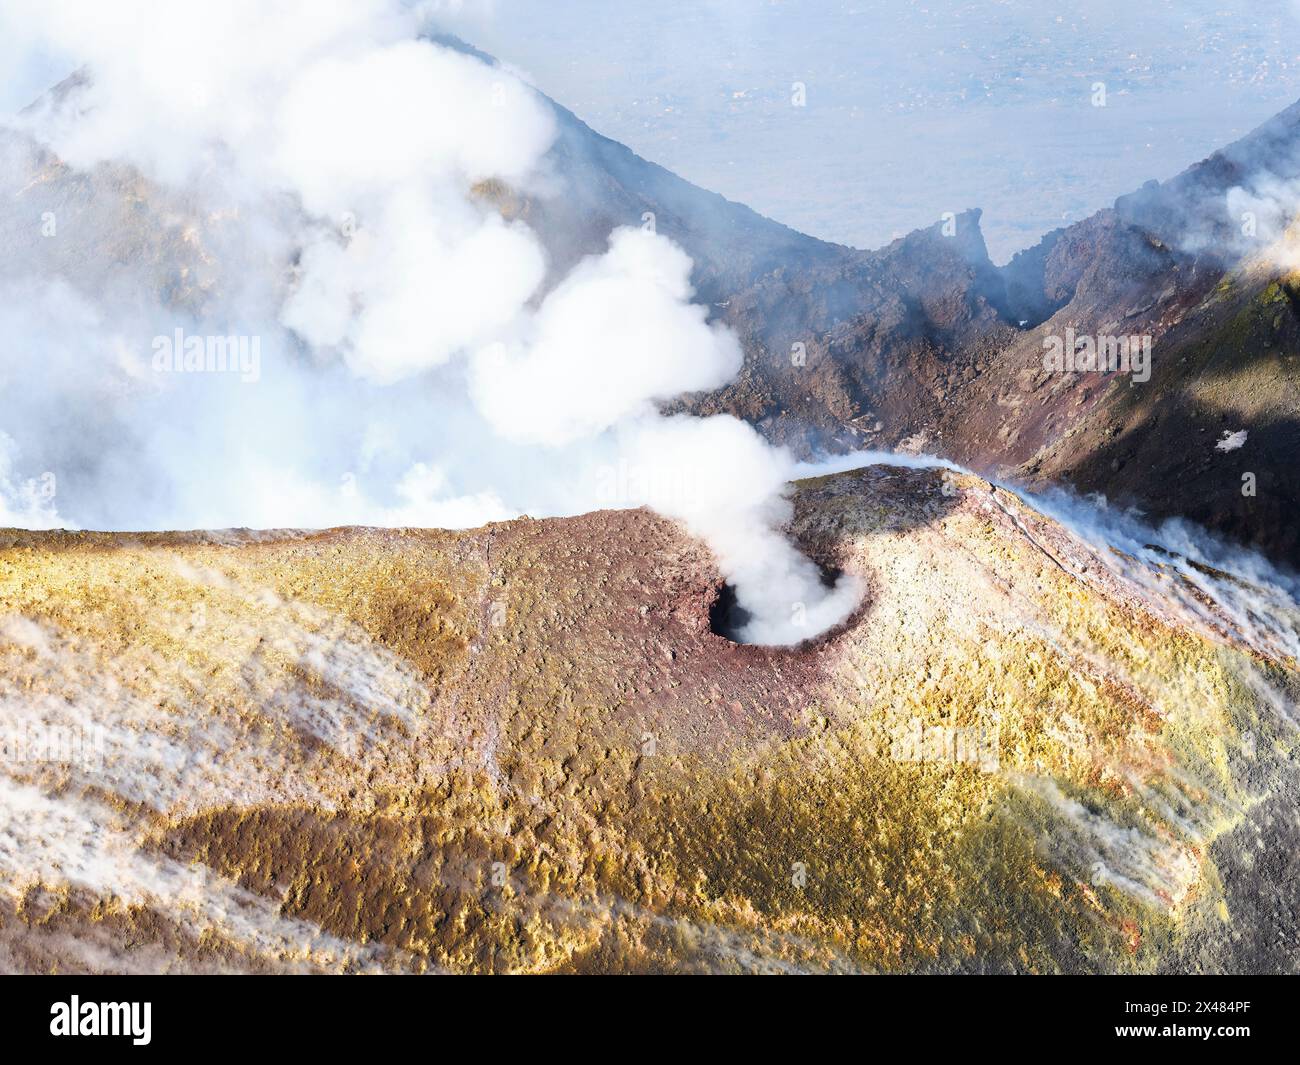 LUFTAUFNAHME. Neuer südöstlicher Krater auf dem Ätna mit der Entlüftung, von der aus die Rauchringe kommen. Metropolitan City of Catania, Sizilien, Italien. Stockfoto